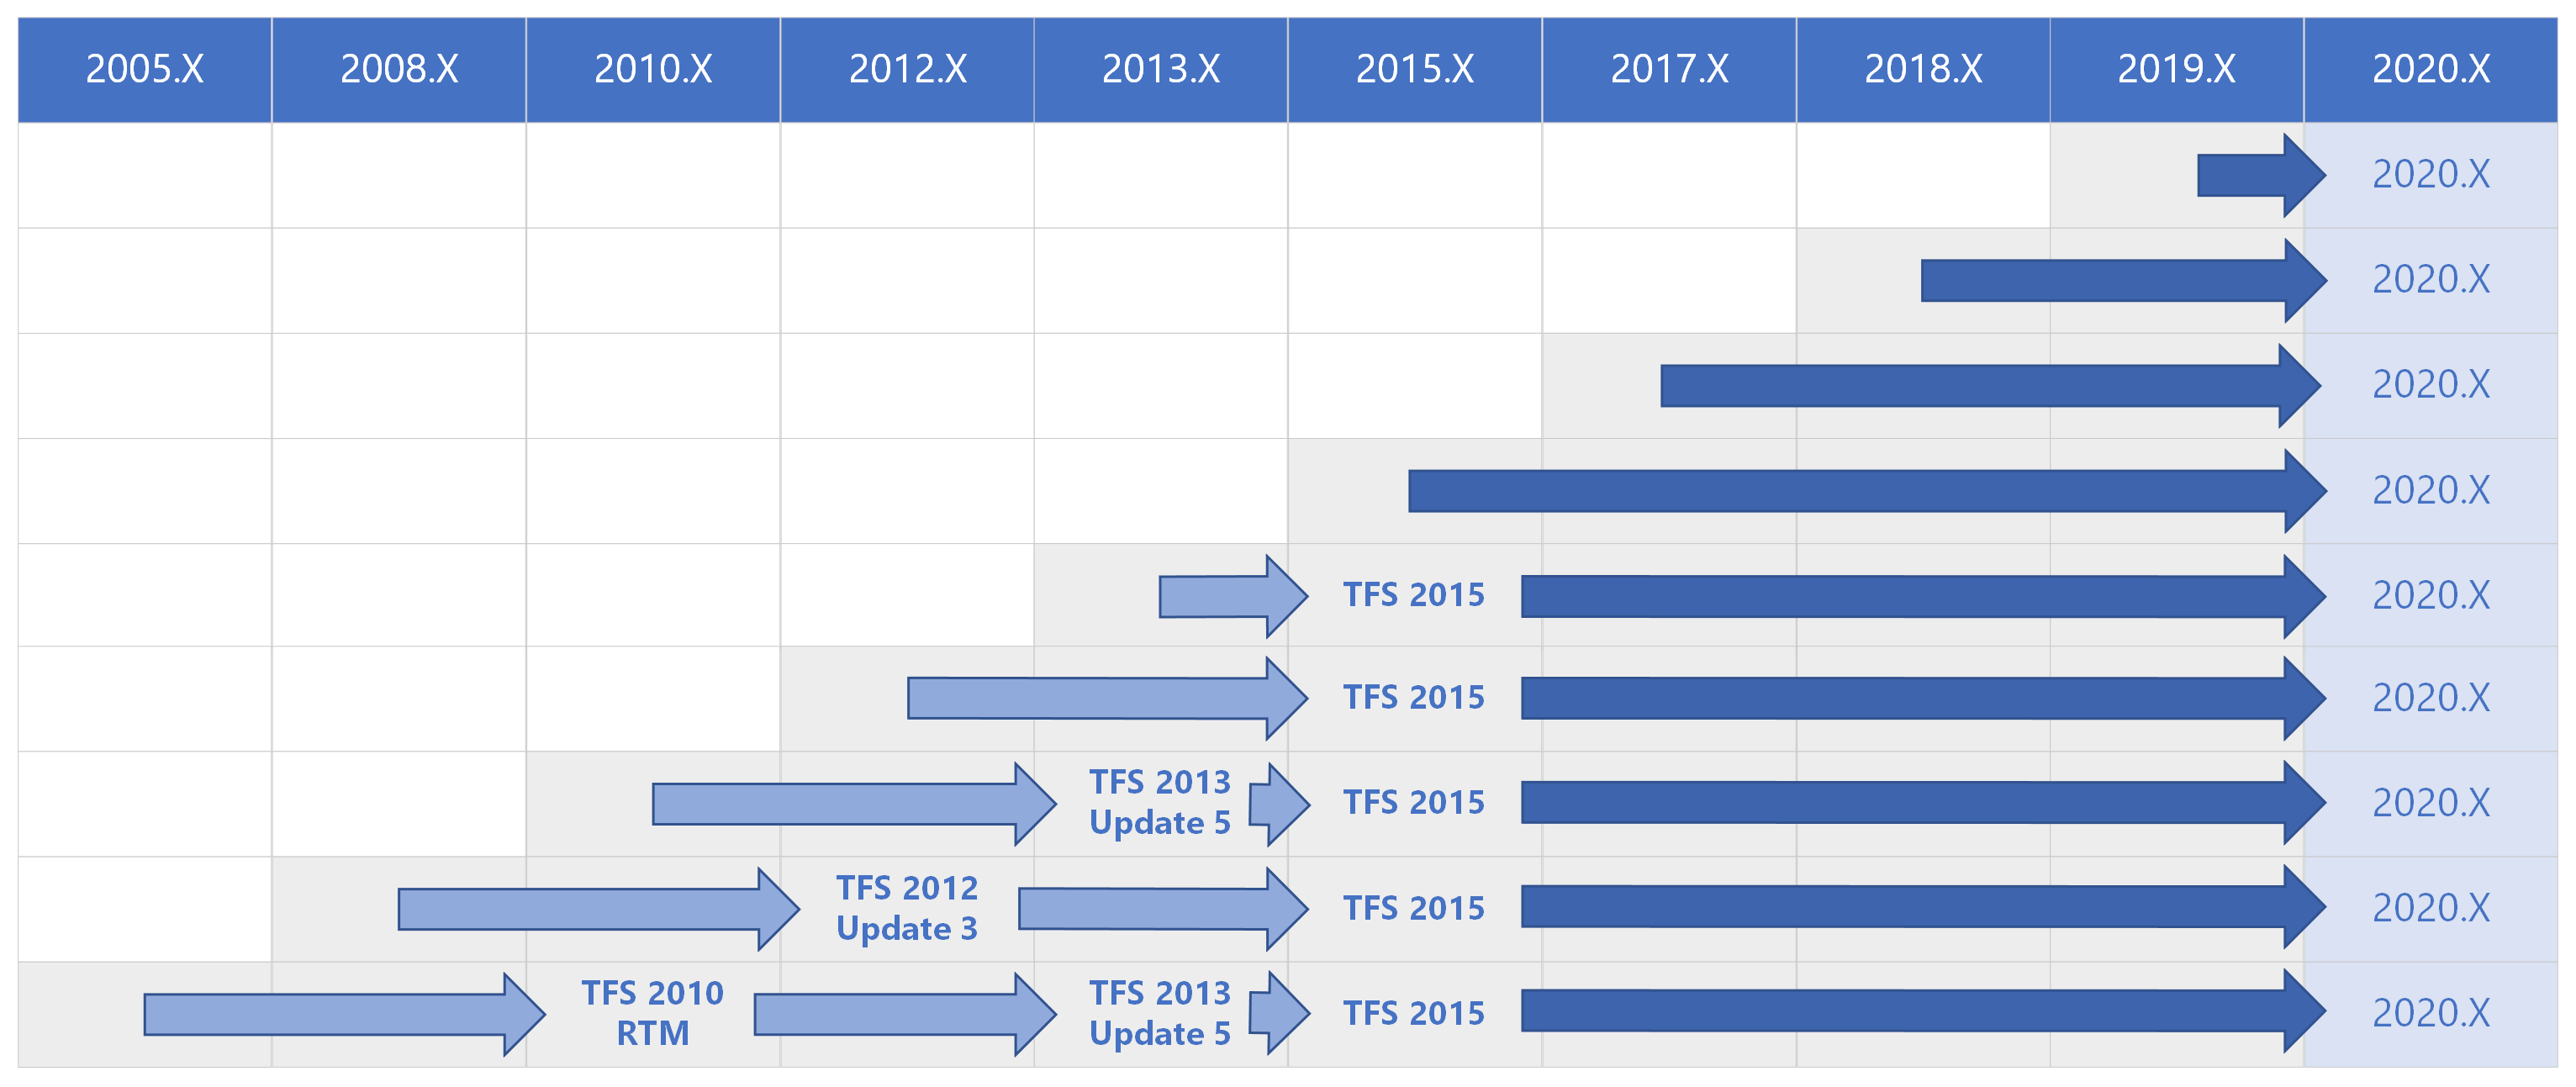 Matriz de rutas de actualización de Azure DevOps 2020 para todas las versiones anteriores.